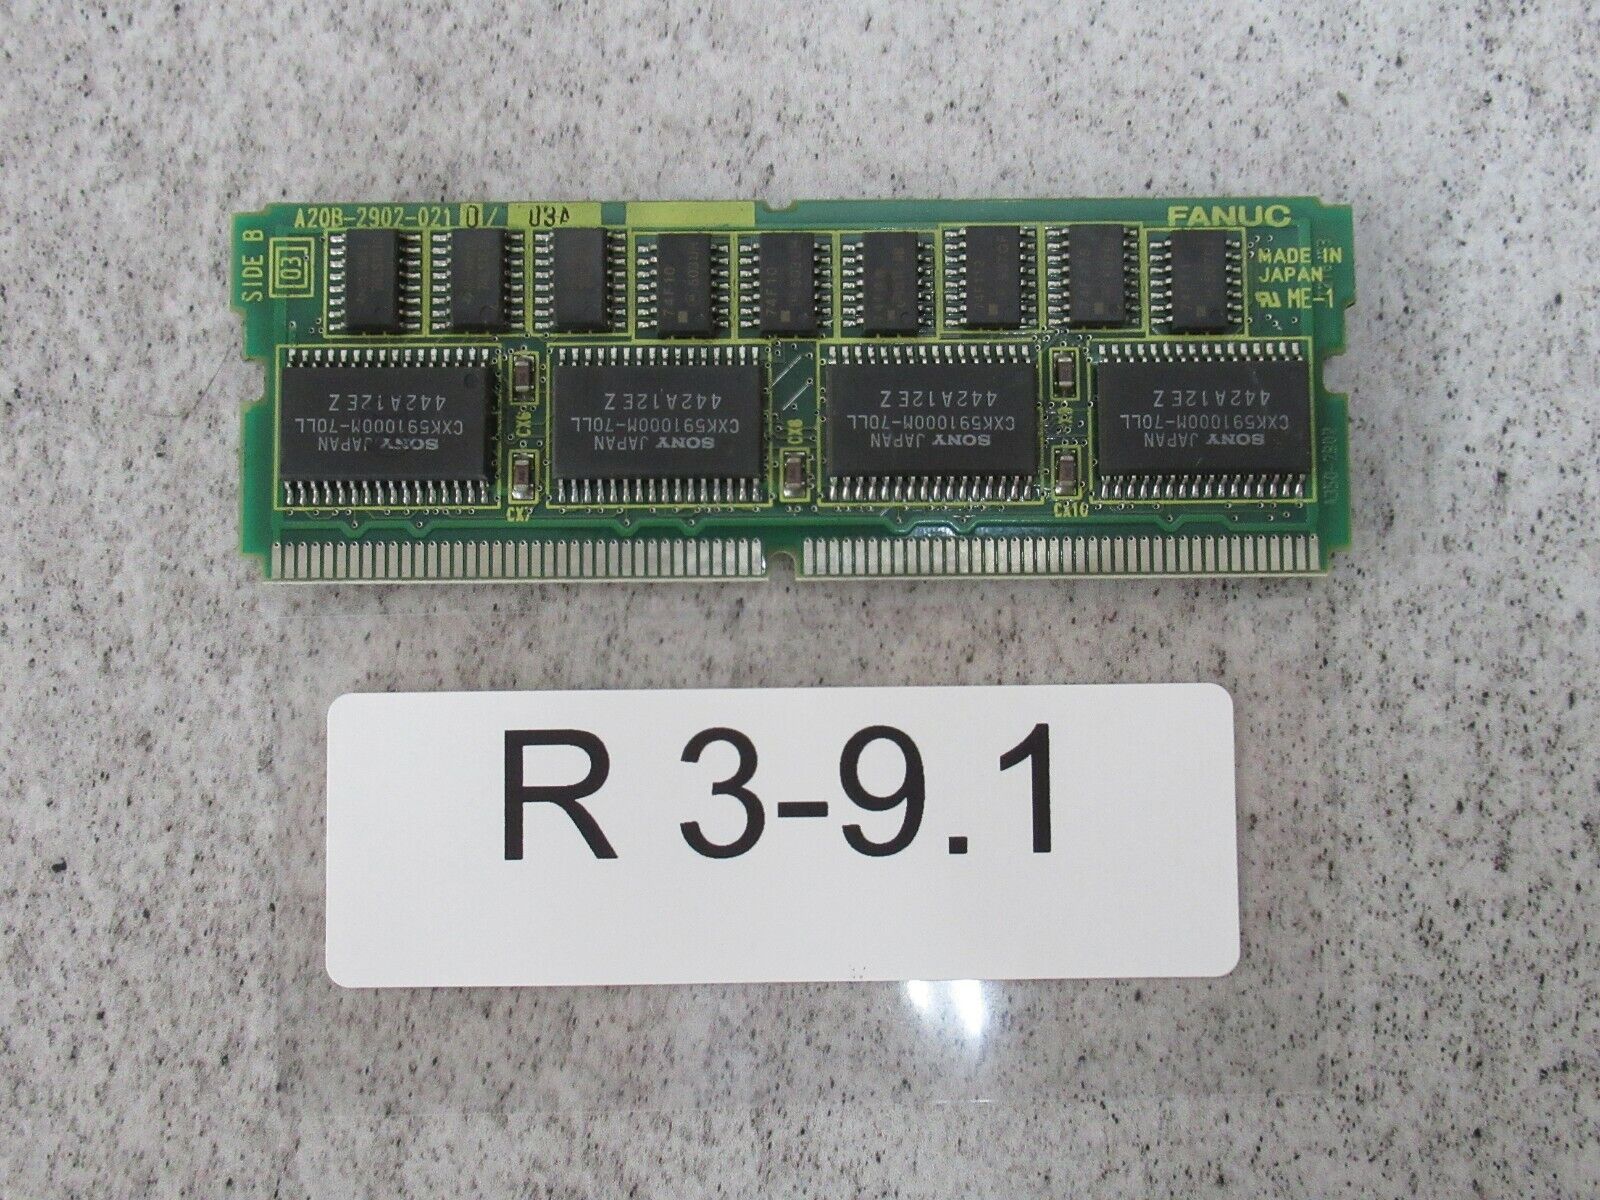 FANUC A20b-2902-0210/03a Memory Module FANUC